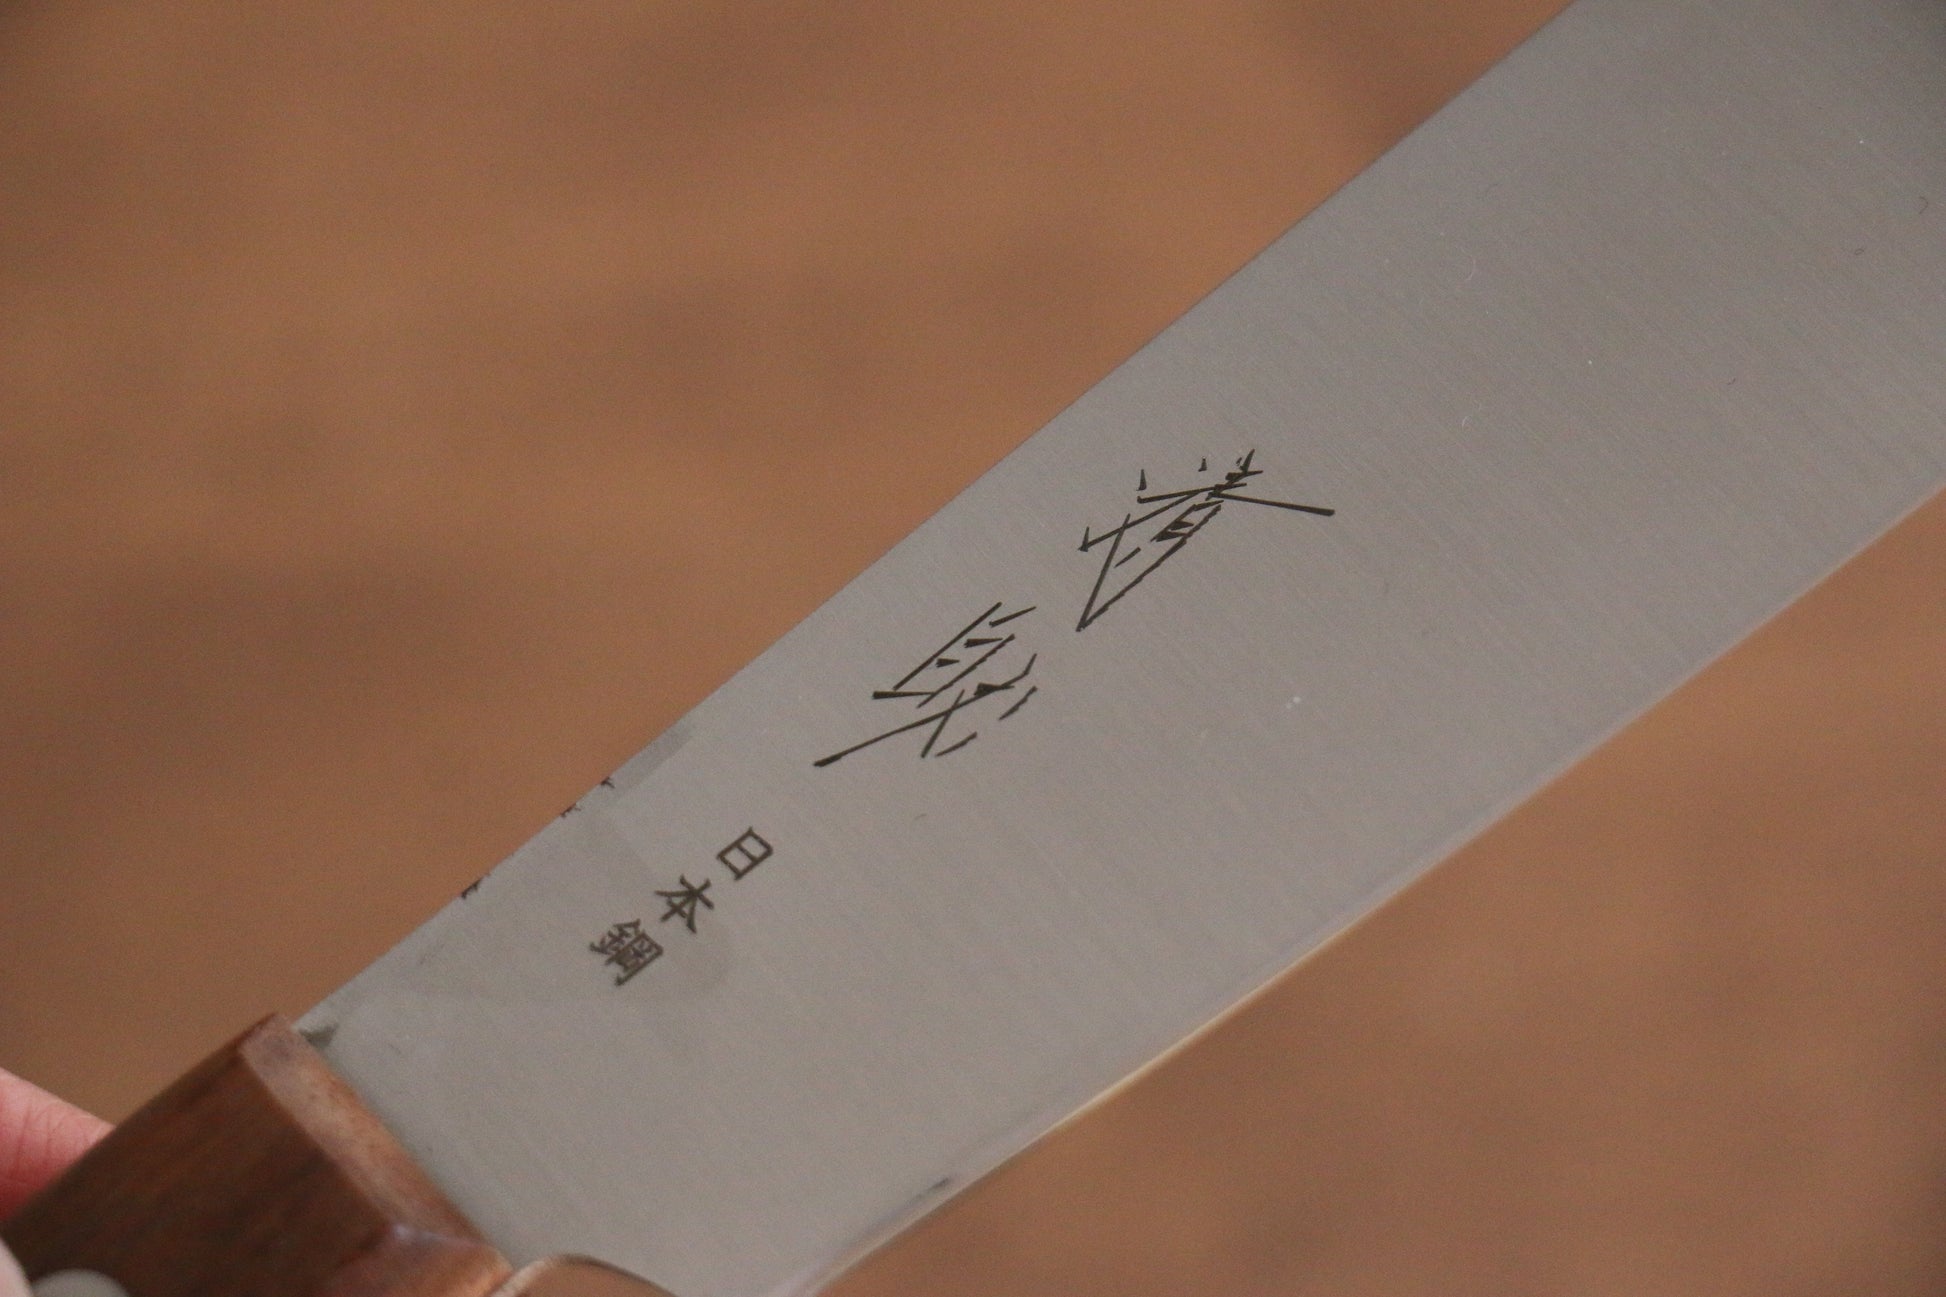 清助 山賊 日本鋼 ブッチャーナイフ  150mm 紫檀柄 - 清助刃物